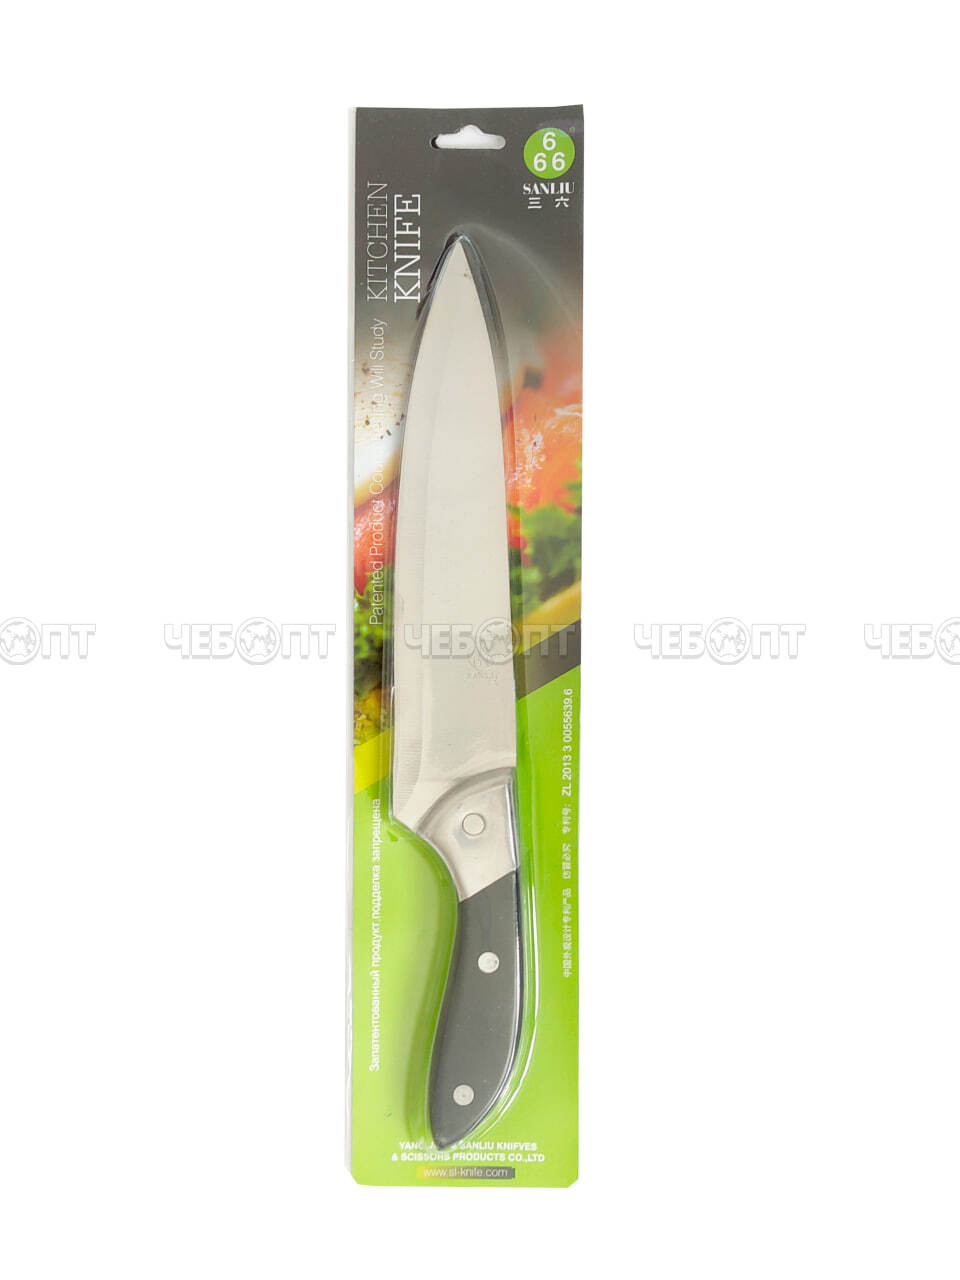 Нож кухонный поварской 20 см Sanliu 666 из нержавеющей стали с пластиковой ручкой, широкое лезвие арт. 26005 $ [120] GOODSEE. ЧЕБОПТ.